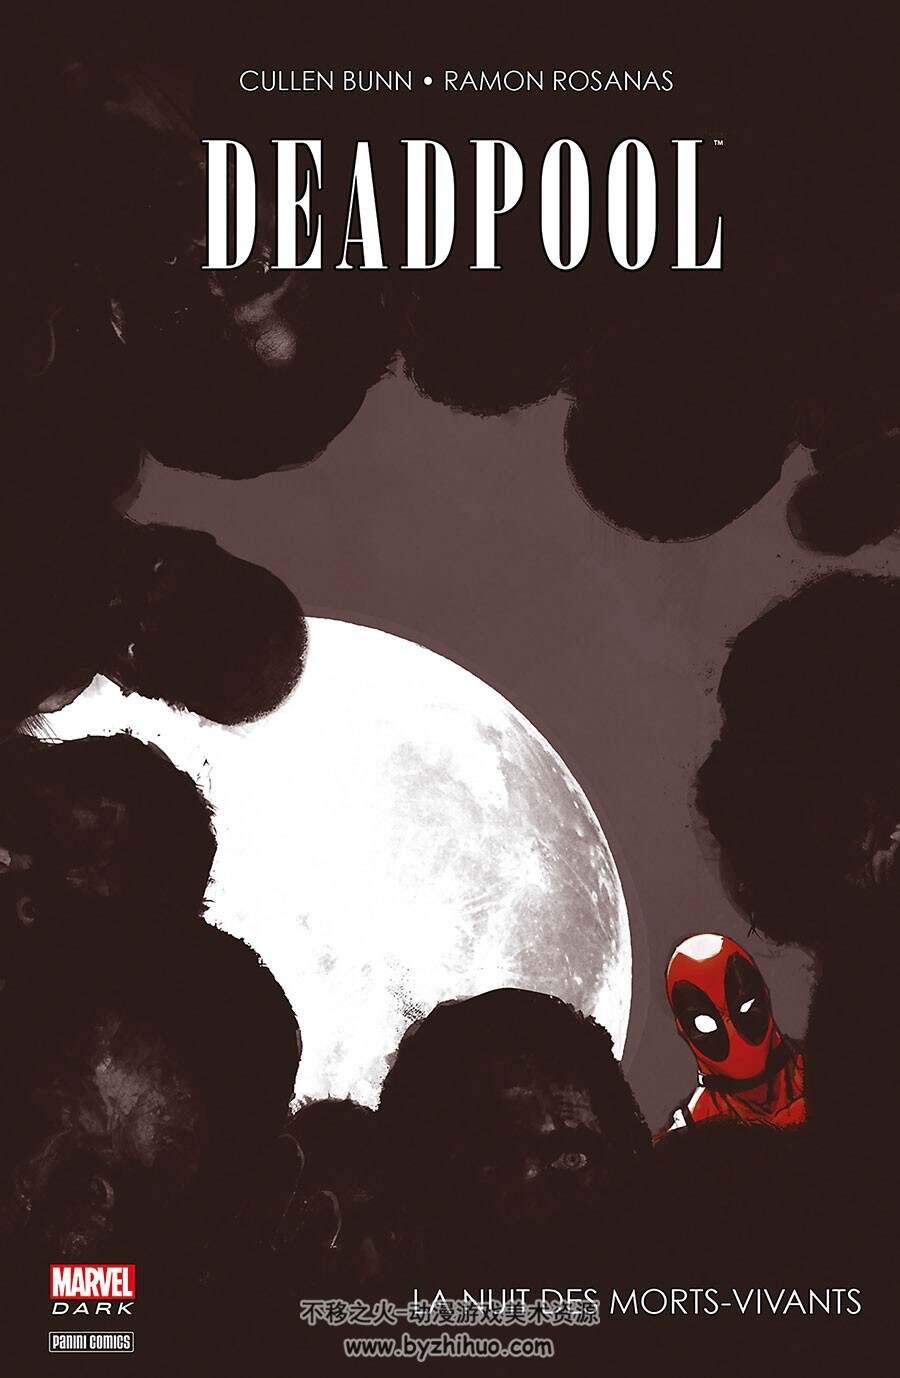 Deadpool - Marvel Dark 1-5册 美国漫威死侍相关彩色漫画资源下载